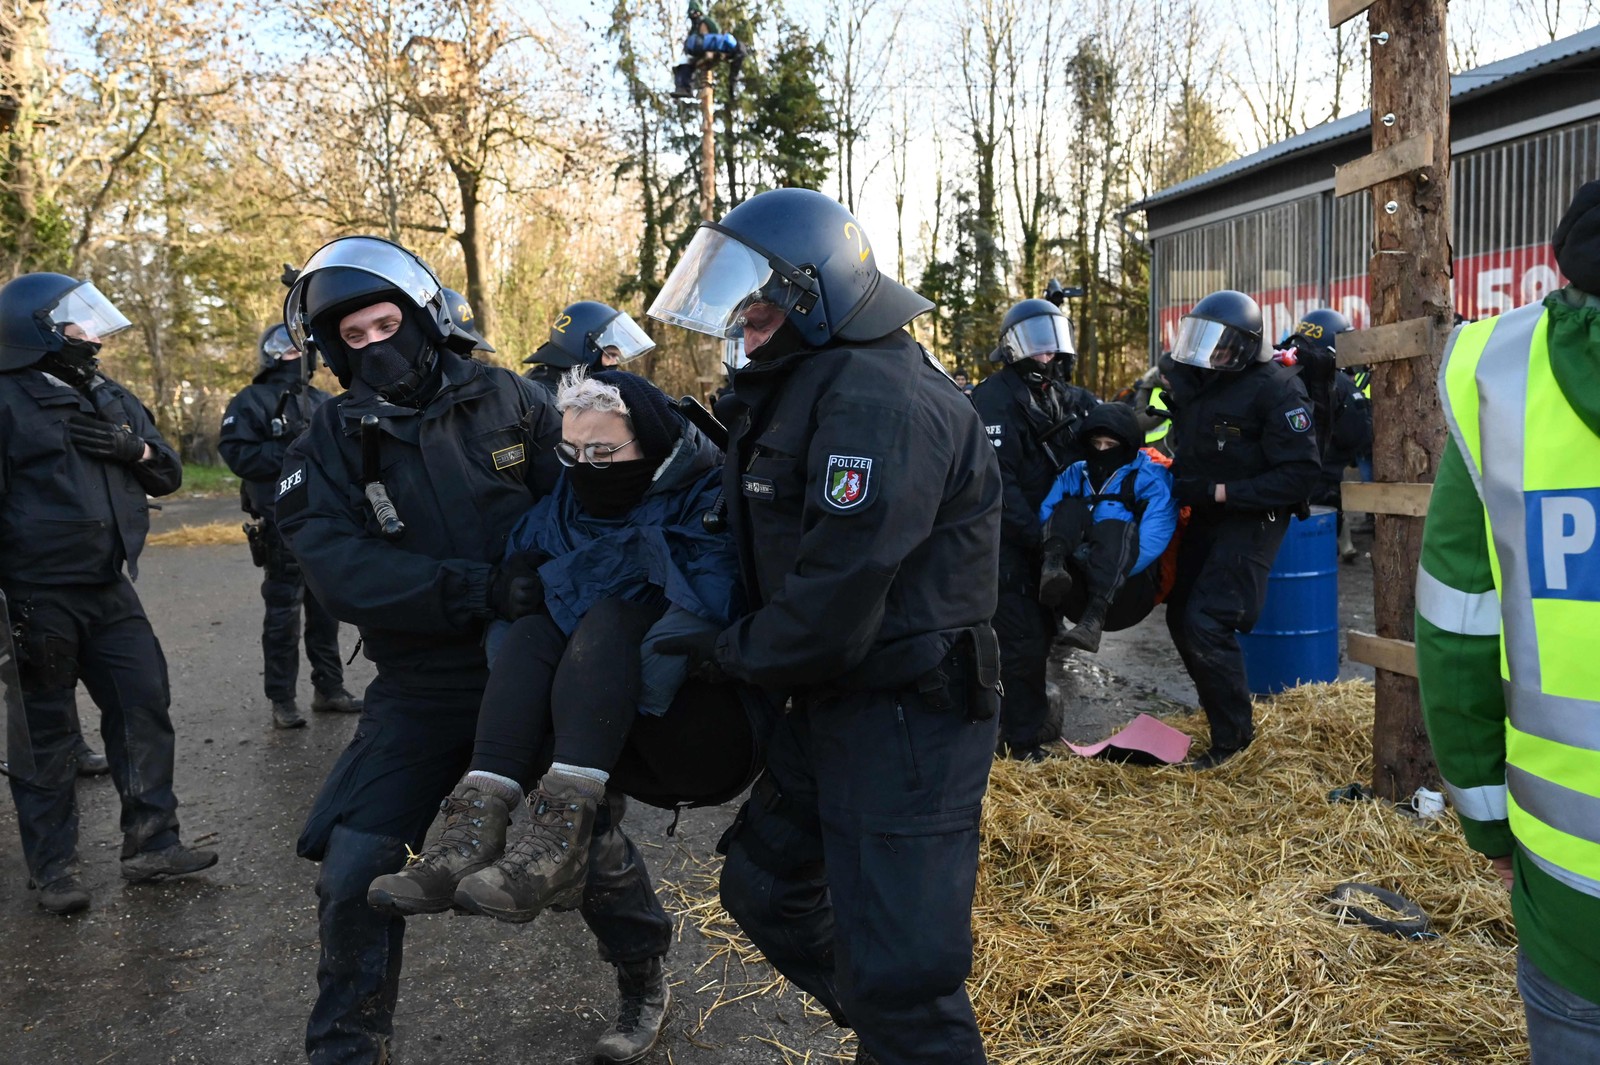 Policiais retiram ativistas anticarvão de um celeiro na vila de Luetzerath, oeste da Alemanha, antes de uma demolição para expandir uma mina de carvão nas proximidades. — Foto: INA FASSBENDER / AFP